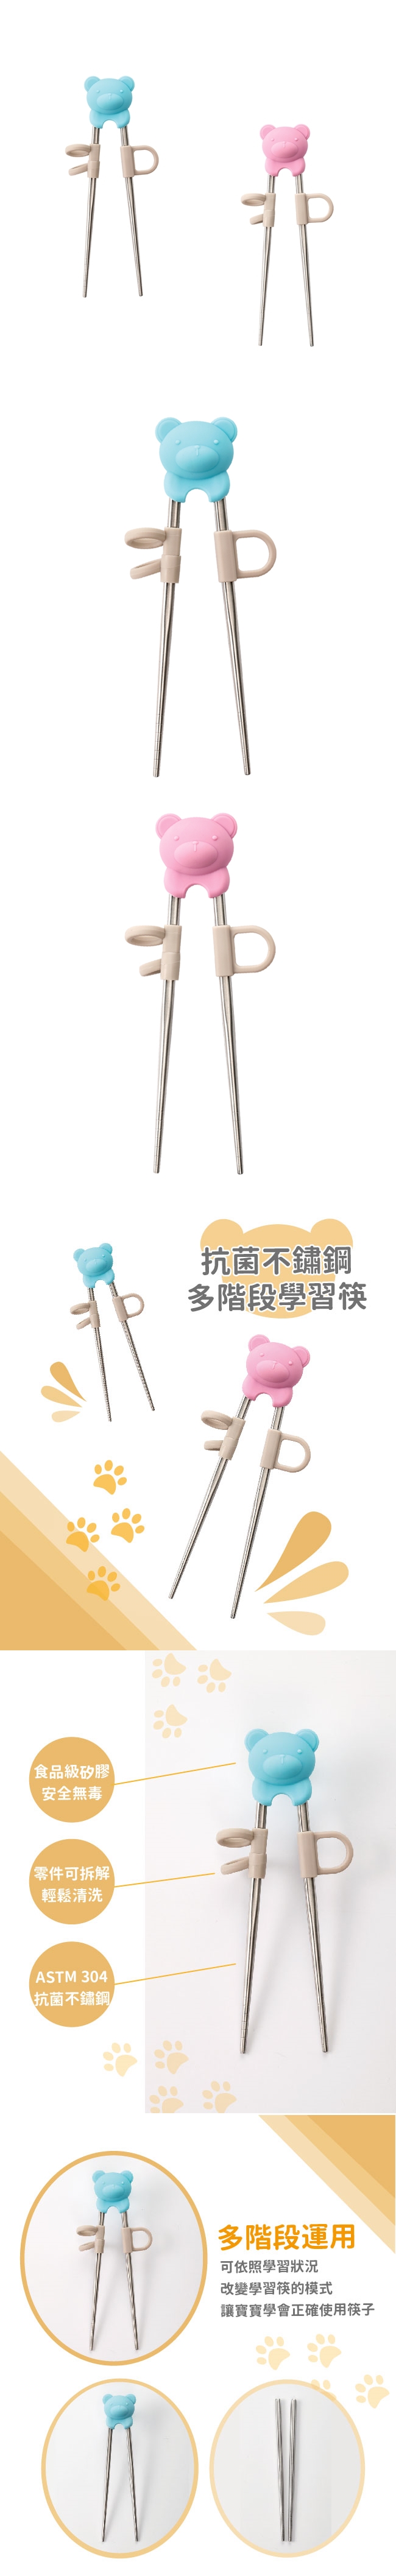 奇哥-抗菌不鏽鋼多階段學習筷(藍色/粉色)TNF01700